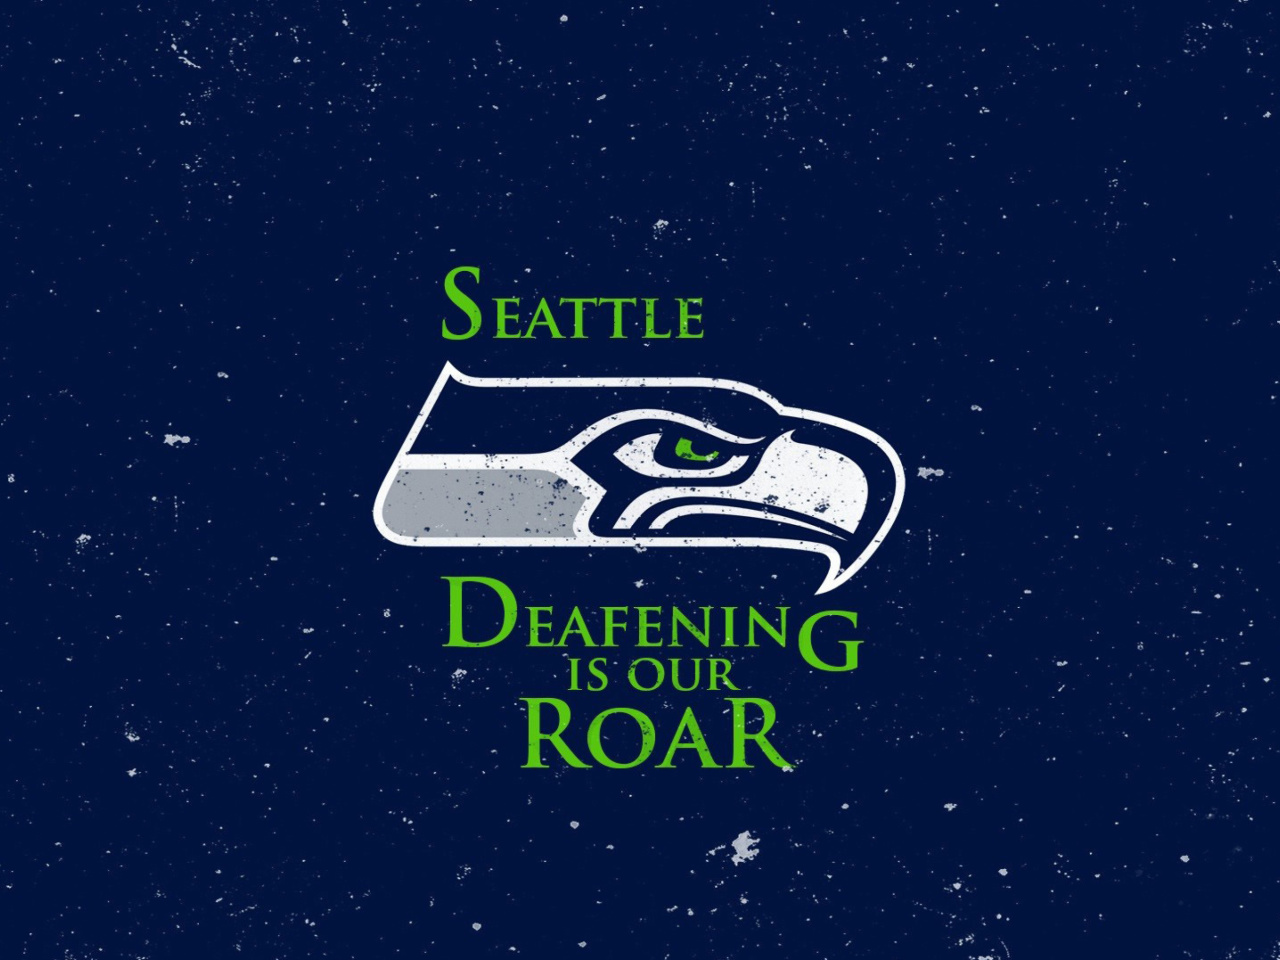 Seattle Seahawks wallpaper 1280x960